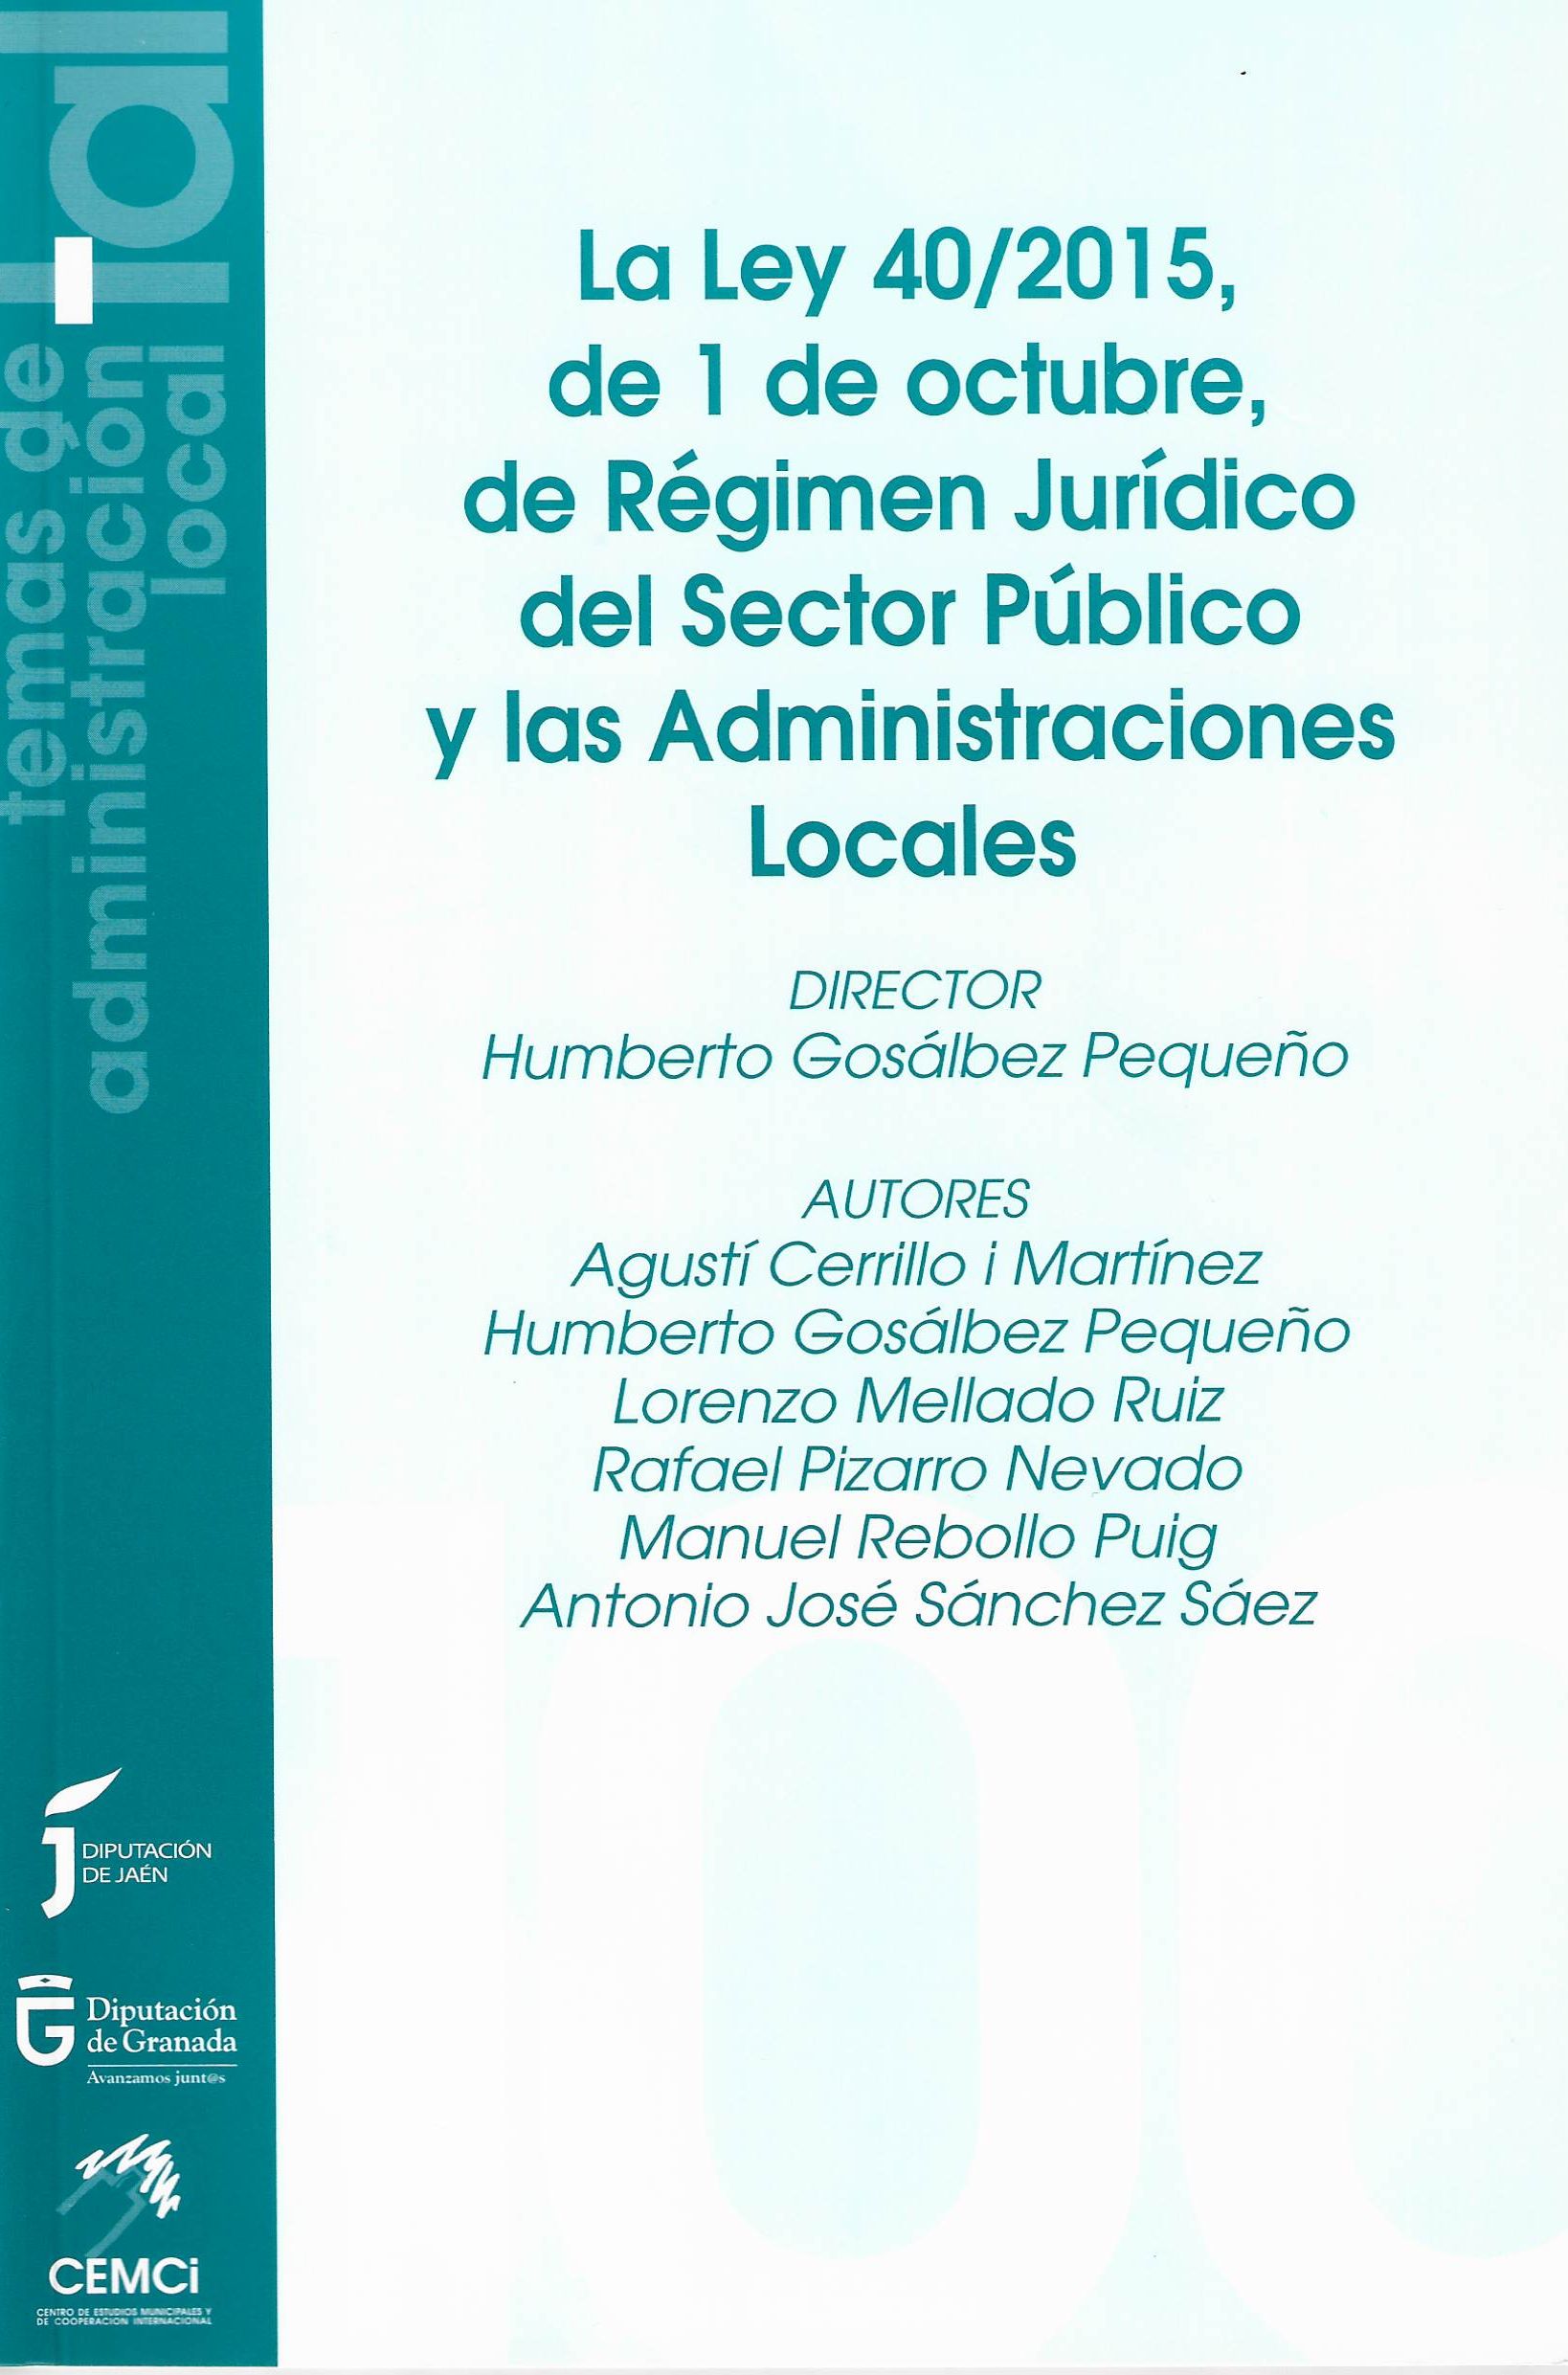 Imagen de portada del libro La Ley 40/2015, de 1 de octubre, de Régimen Jurídico del Sector Público y las Administraciones Públicas